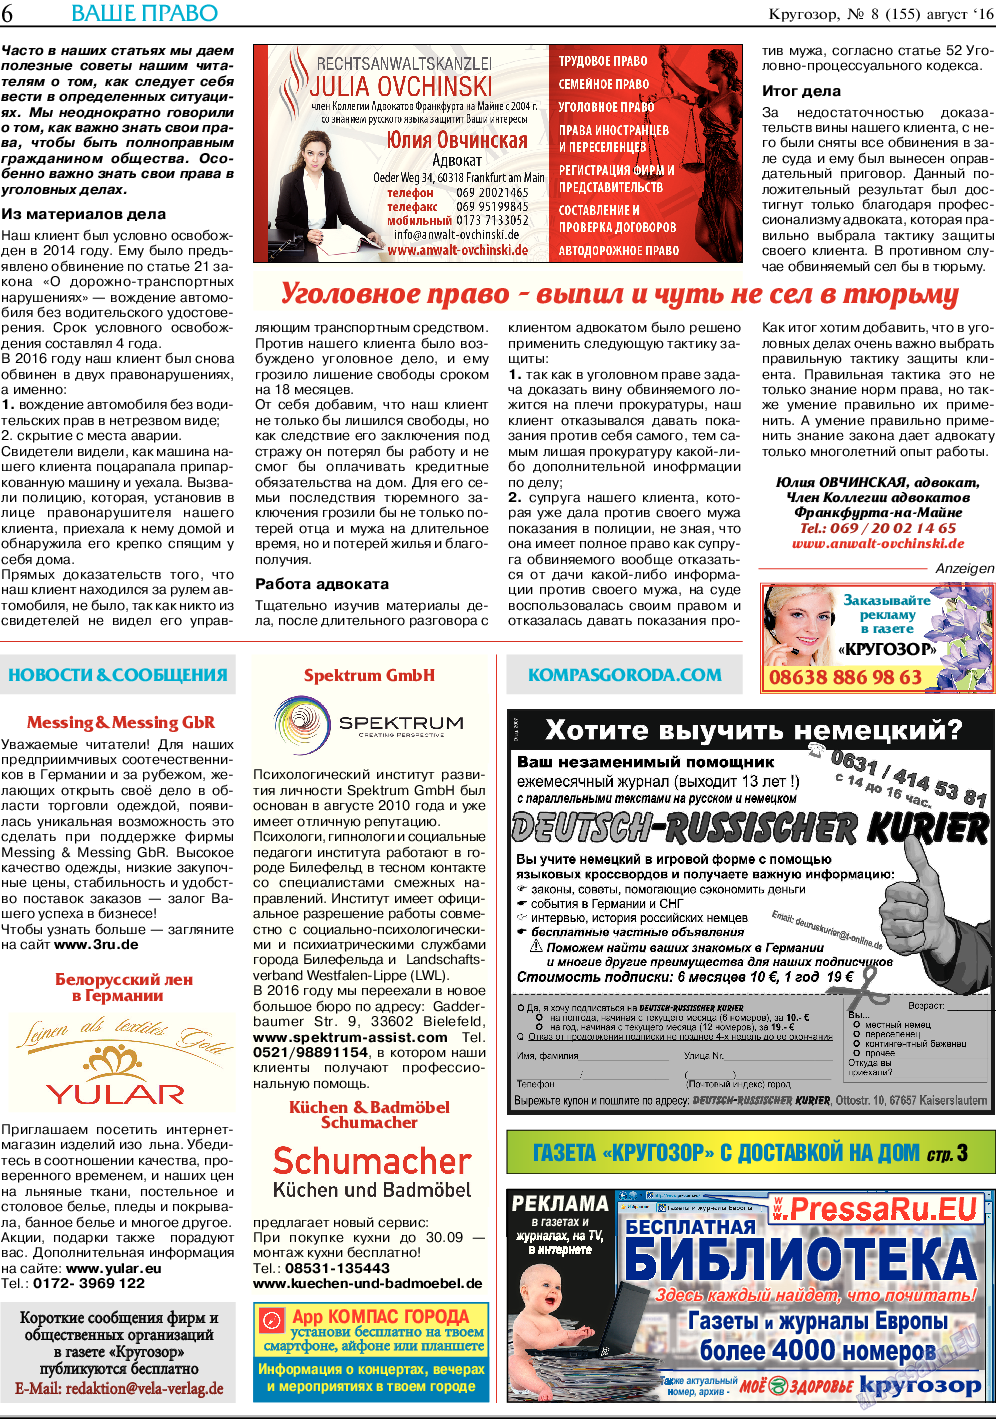 Кругозор (газета). 2016 год, номер 8, стр. 6